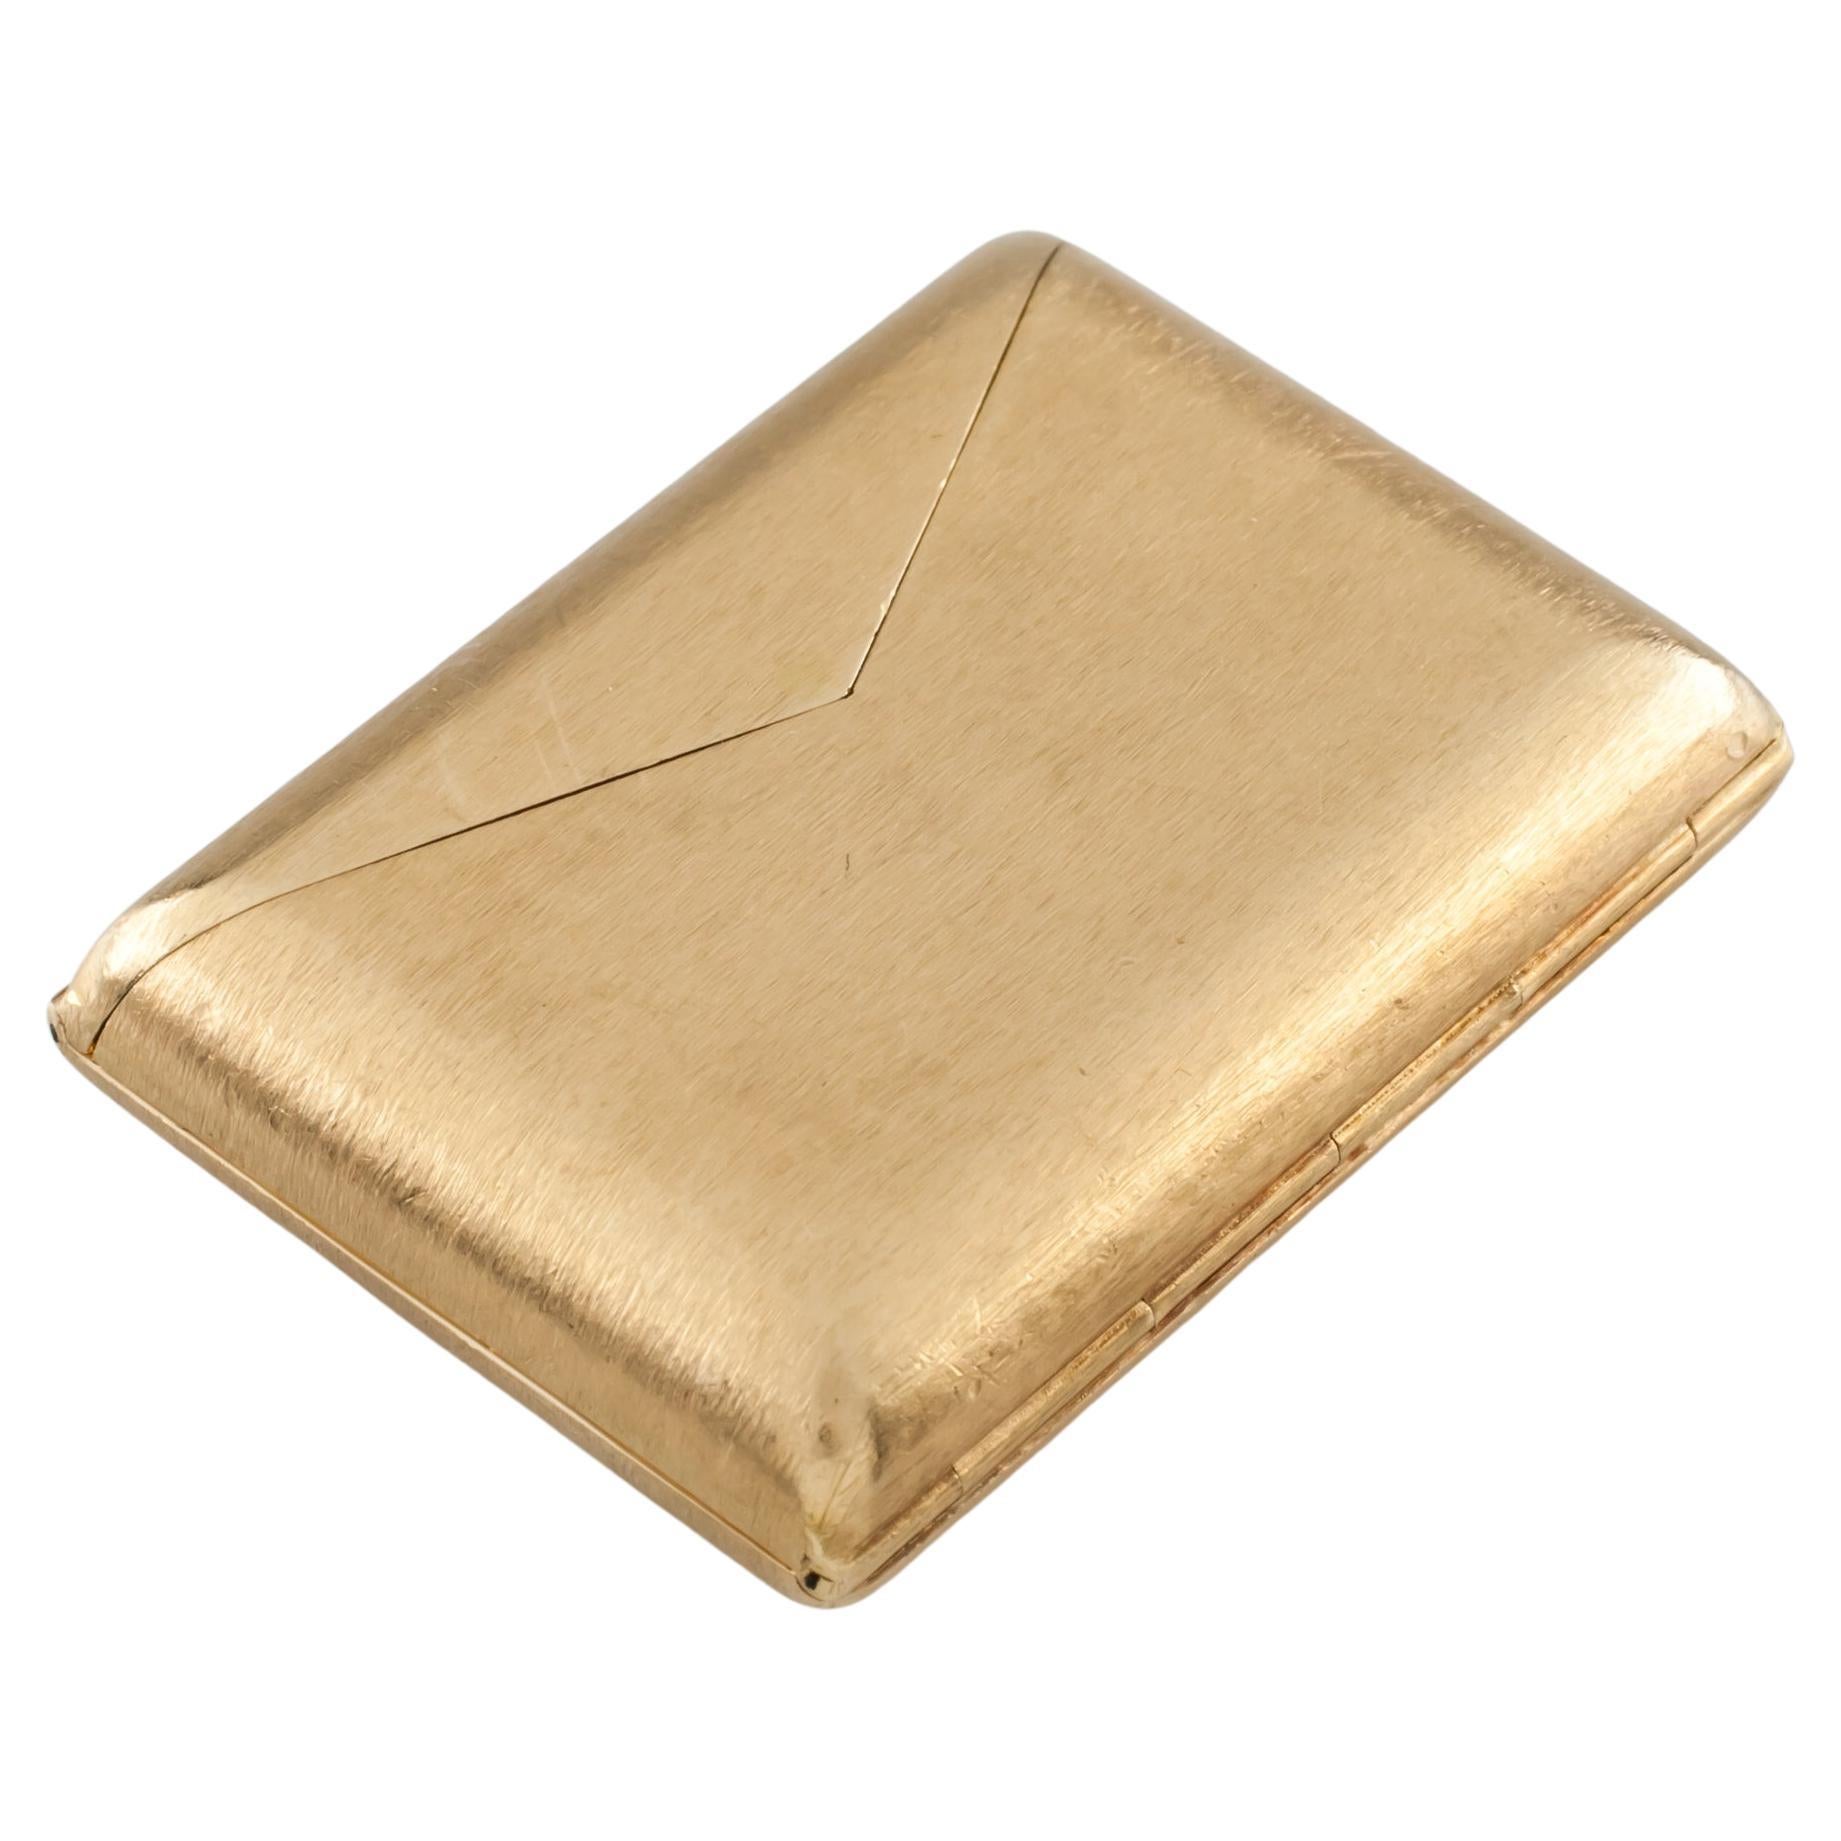 14k Gelbgold Umschlag-Taschenuhr von Kior! Ein großartiges Vintage-Stück!

Wunderschöne Vintage Taschenuhr
Mit kleinem Uhrwerk/Zifferblatt in klappbarem Gehäuse aus 14k Gelbgold
Abmessungen des Gehäuses = 42 mm lang x 30 mm breit
Gesamtmasse = 48.8